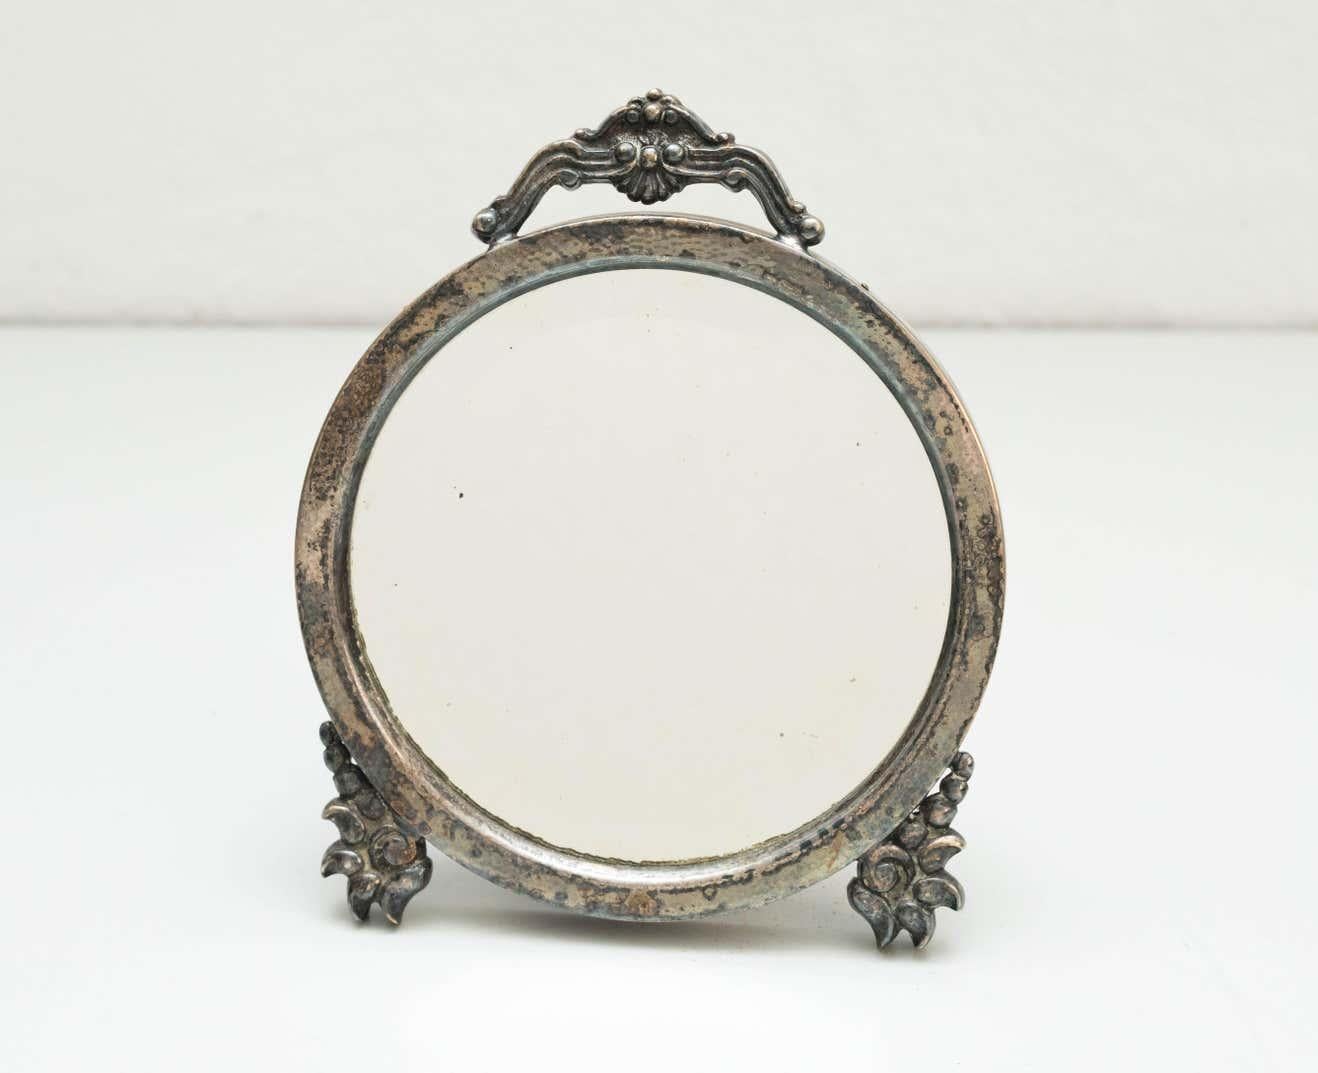 Runder Spiegel aus Metall und Holz, um 1930. 
Traditionell in Spanien hergestellt.
Von einem unbekannten Designer.

Dieser runde Spiegel aus Metall und Holz, der um 1930 von einem unbekannten Designer in Spanien hergestellt wurde, versprüht den